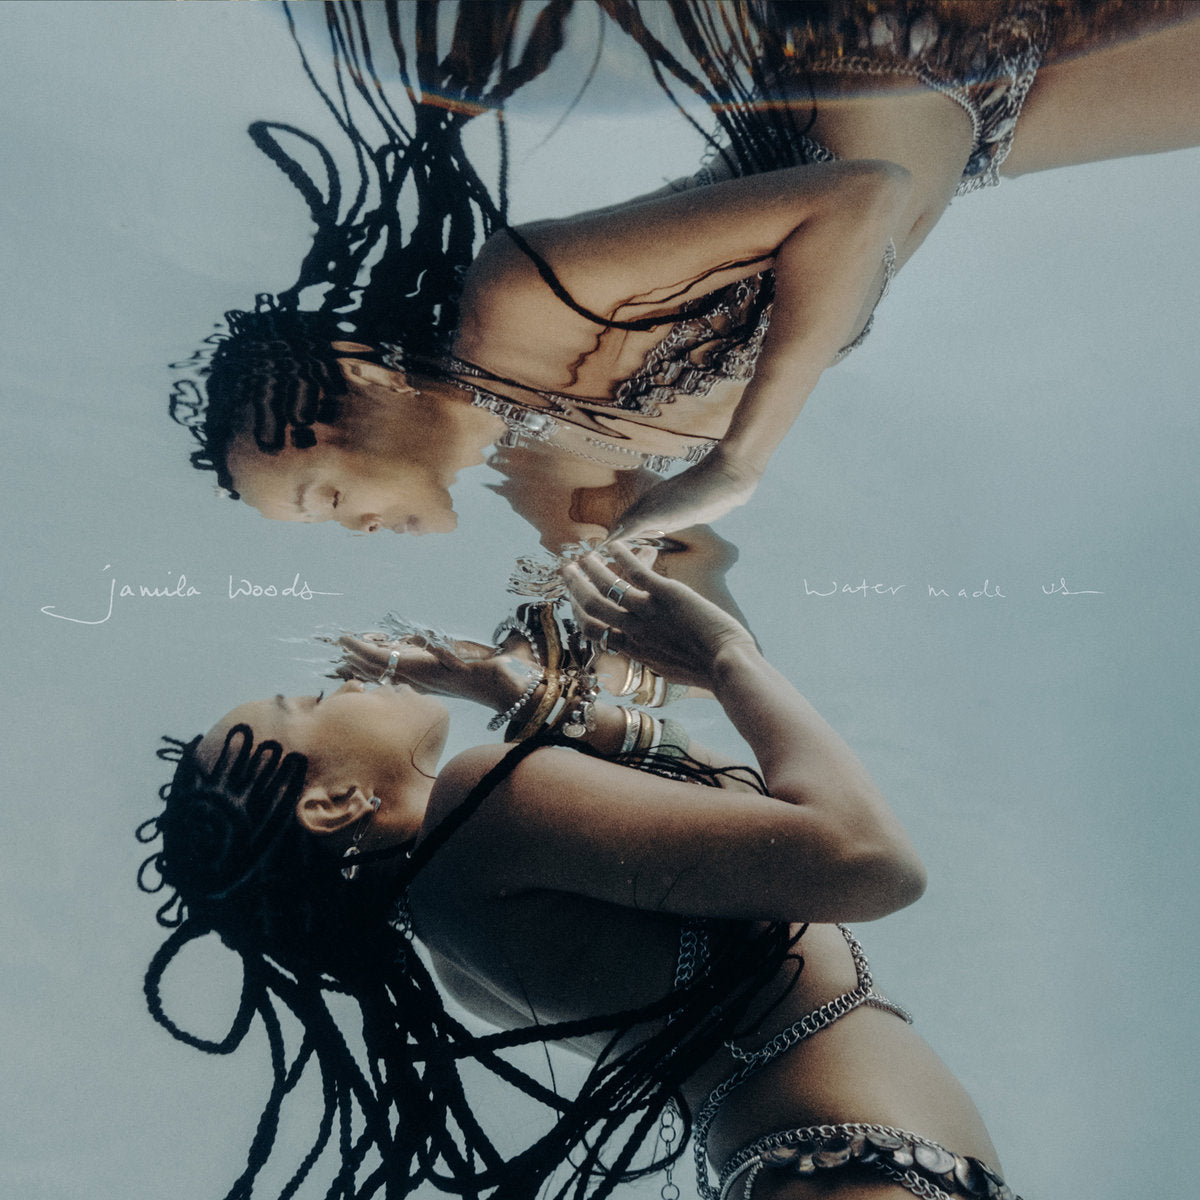 JAMILA WOODS - WATER MADE US Vinyl LP